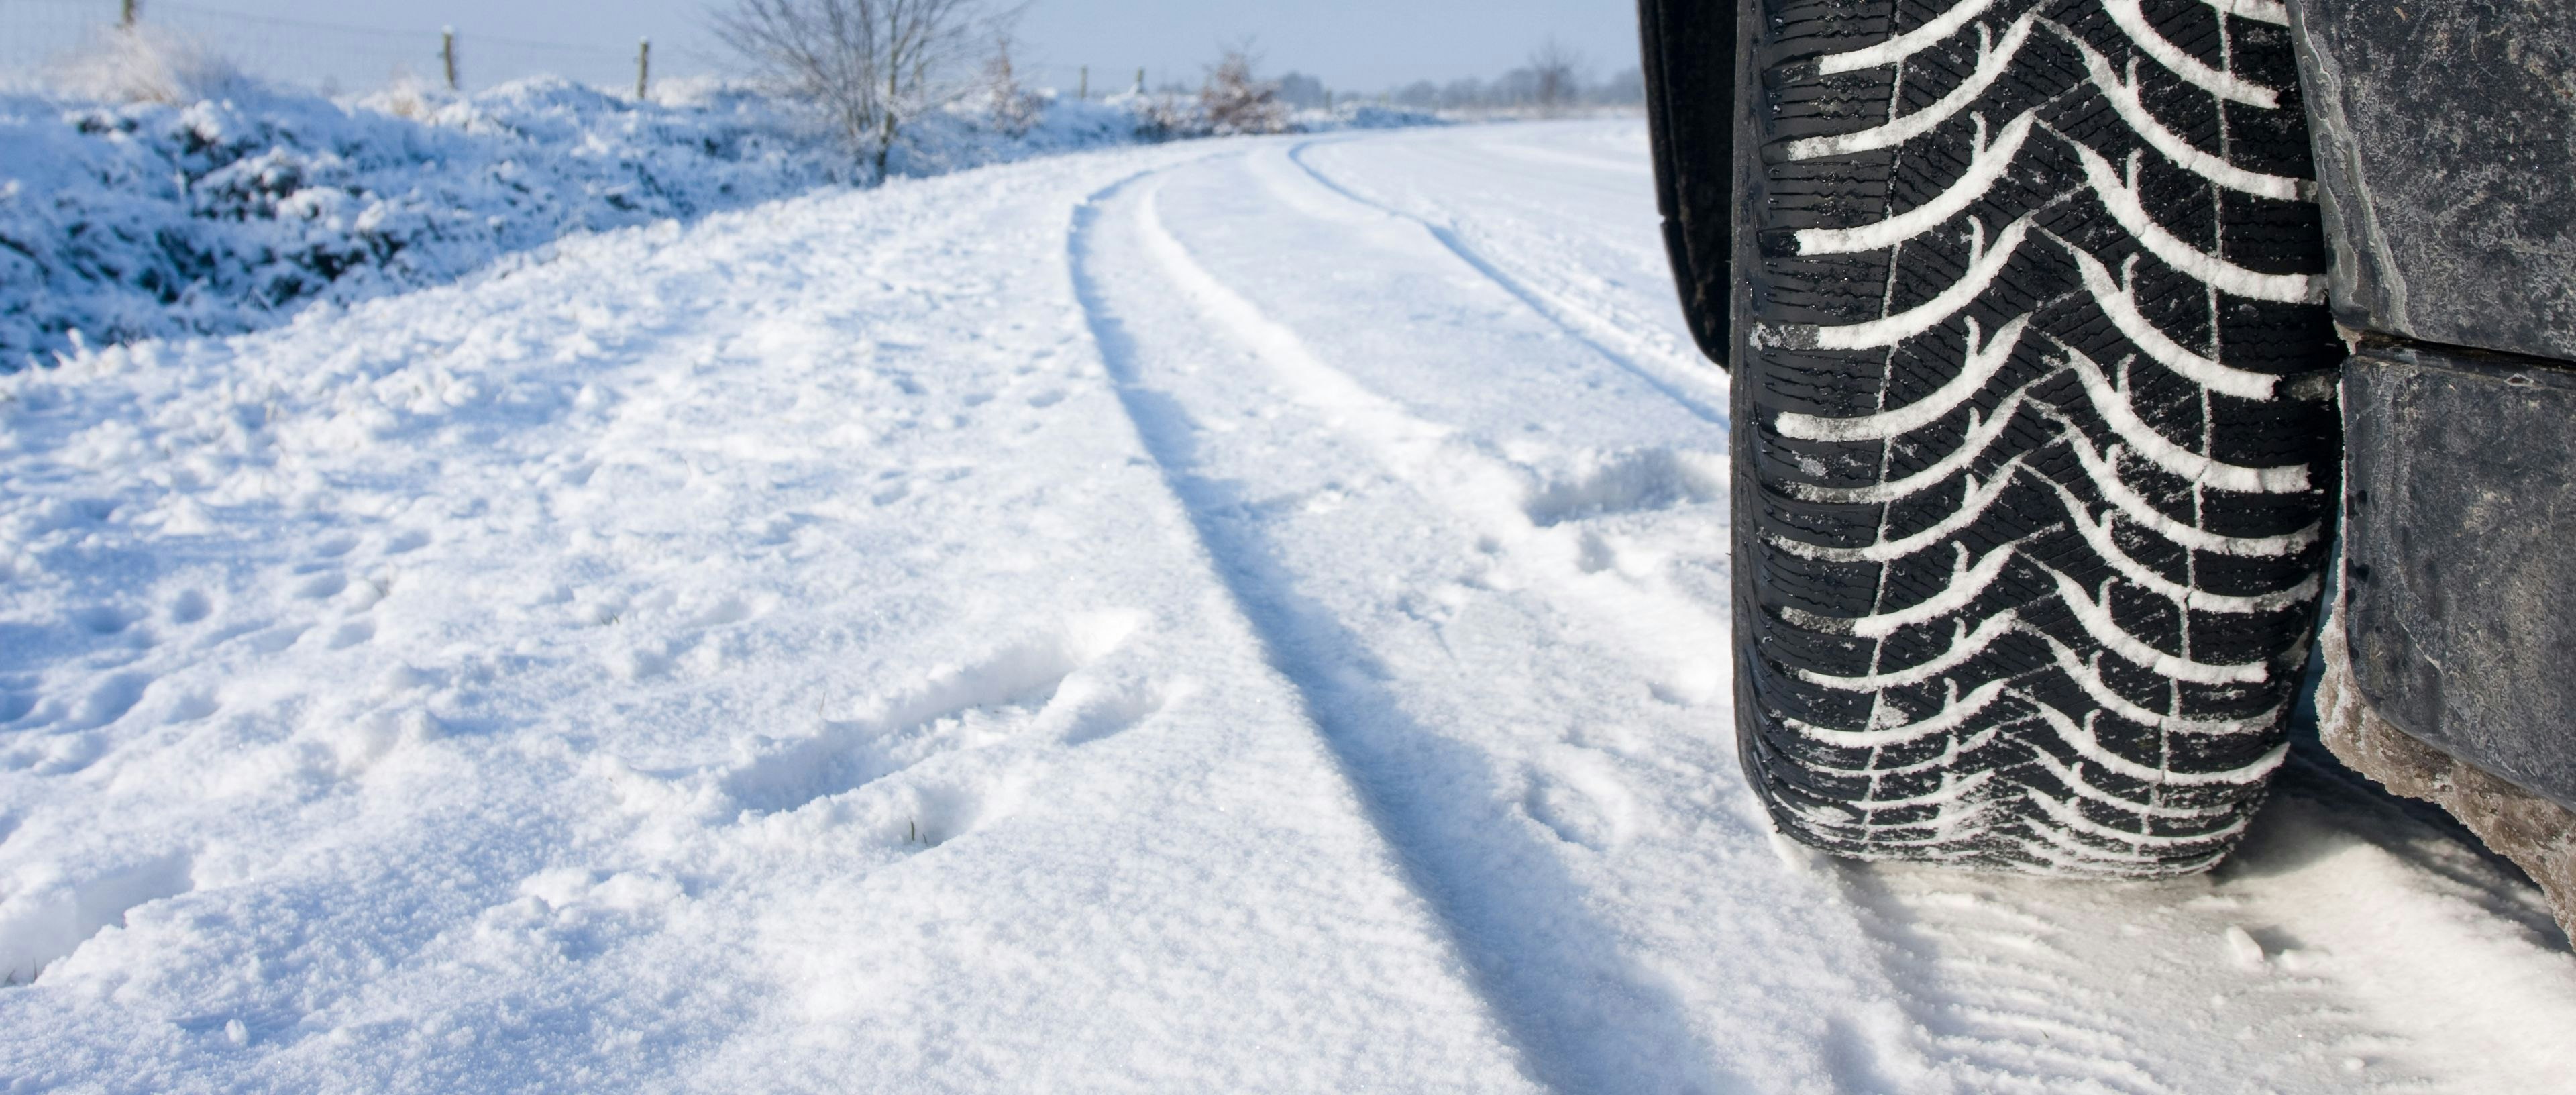 Neige, verglas: huit conseils pour prendre sa voiture dans des conditions  hivernales - Le Soir